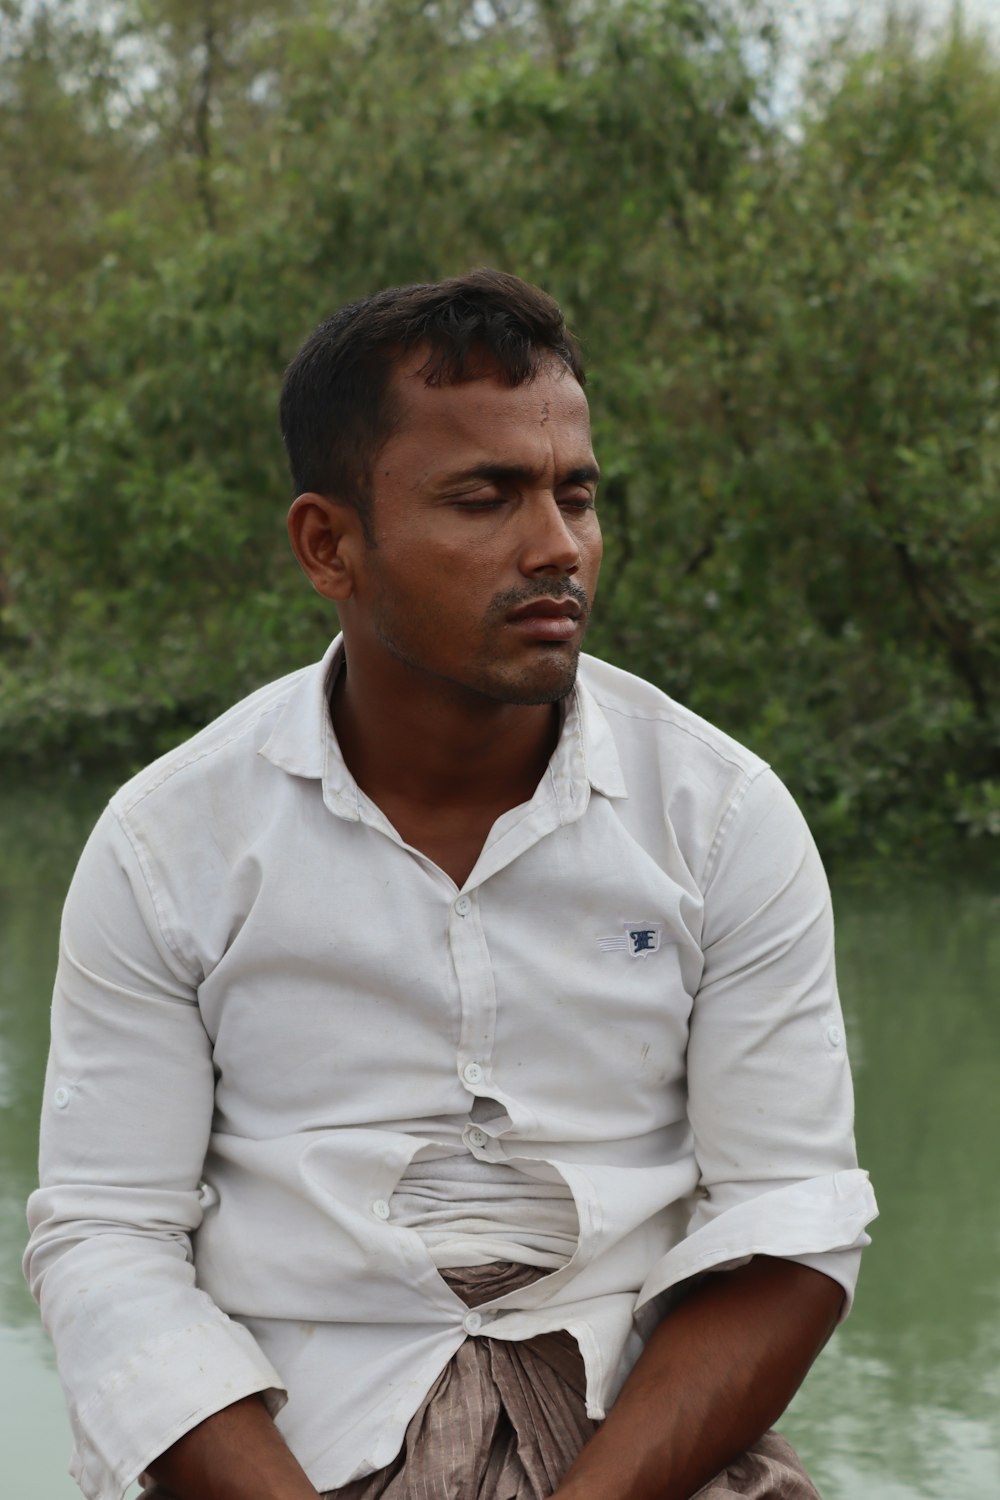 Mann im weißen Hemd tagsüber auf grünem Rasen stehend